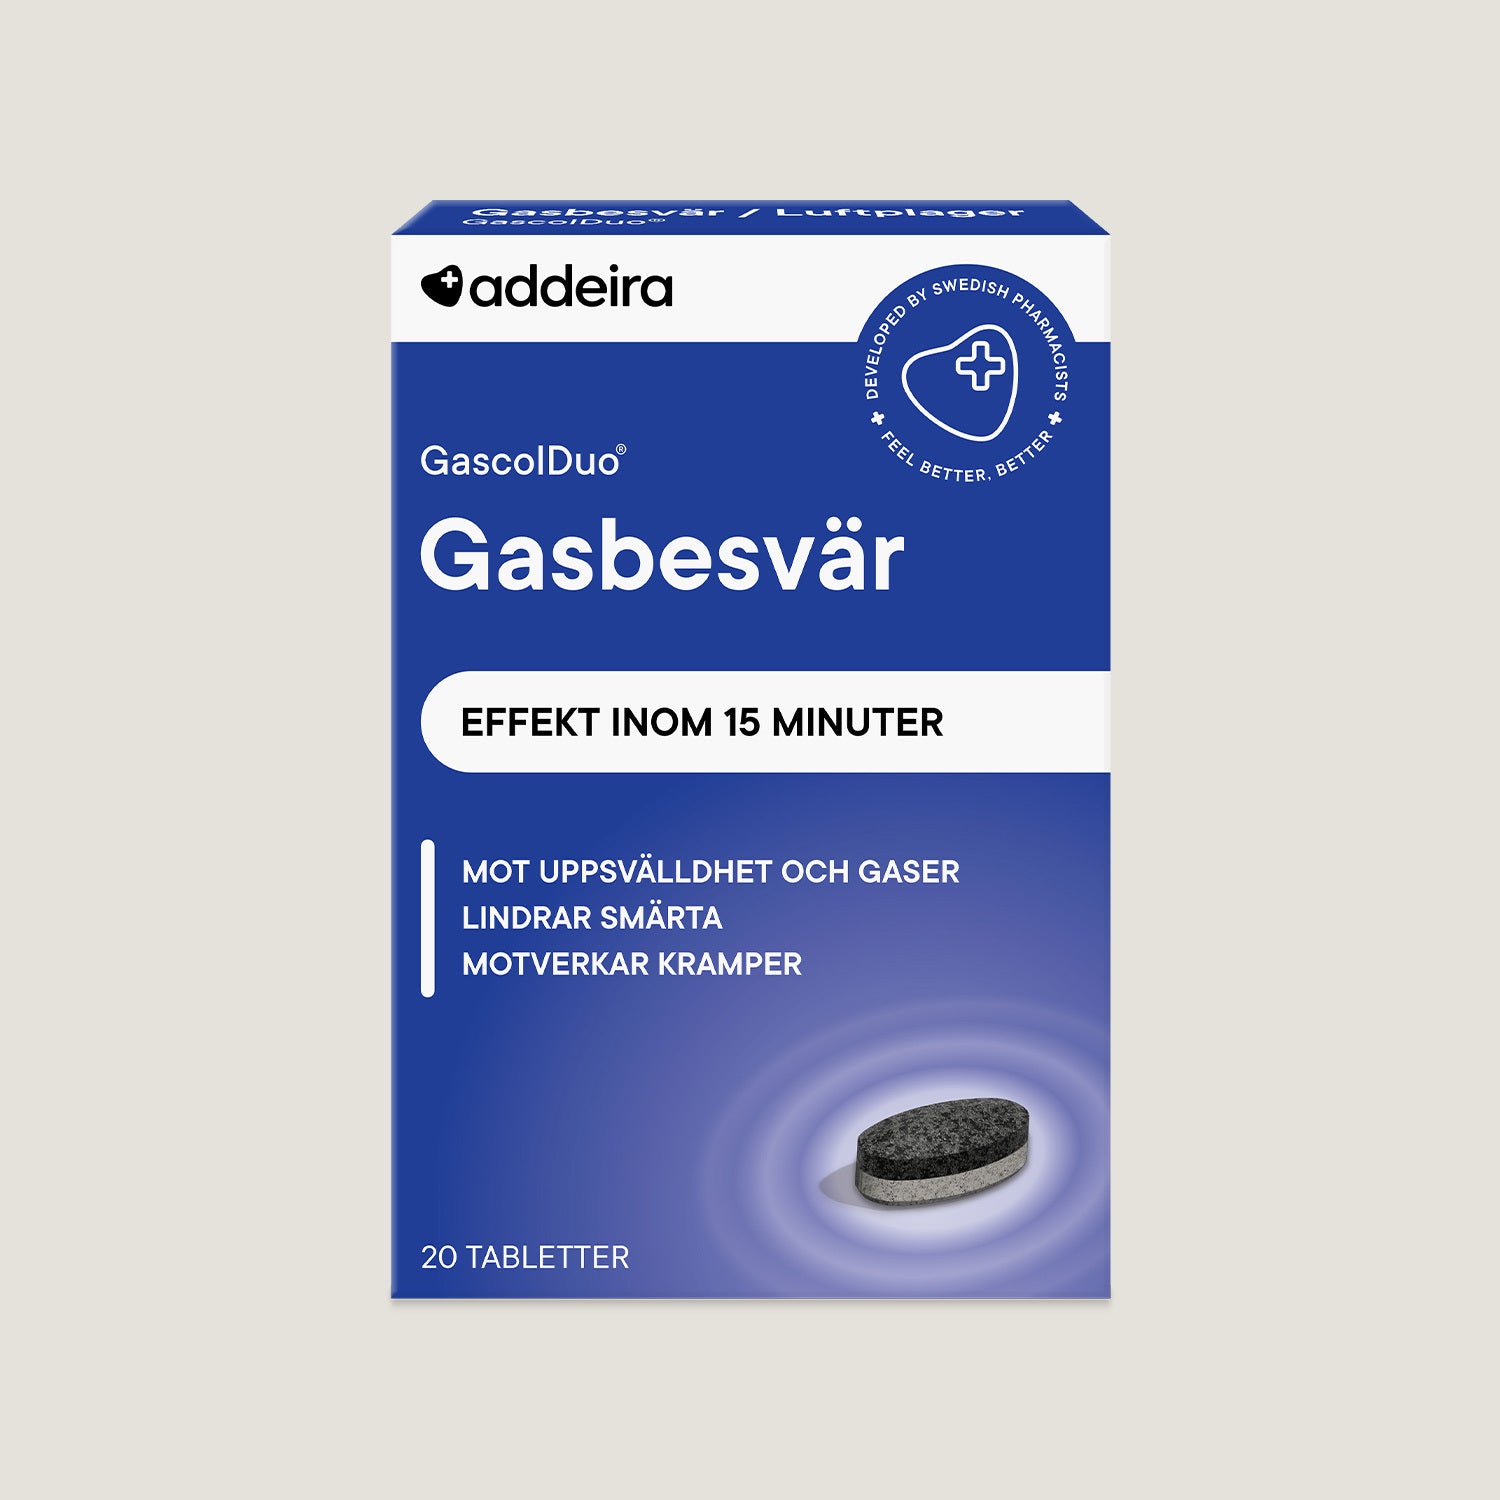 GascolDuo vid gasbesvär, 20 tabletter